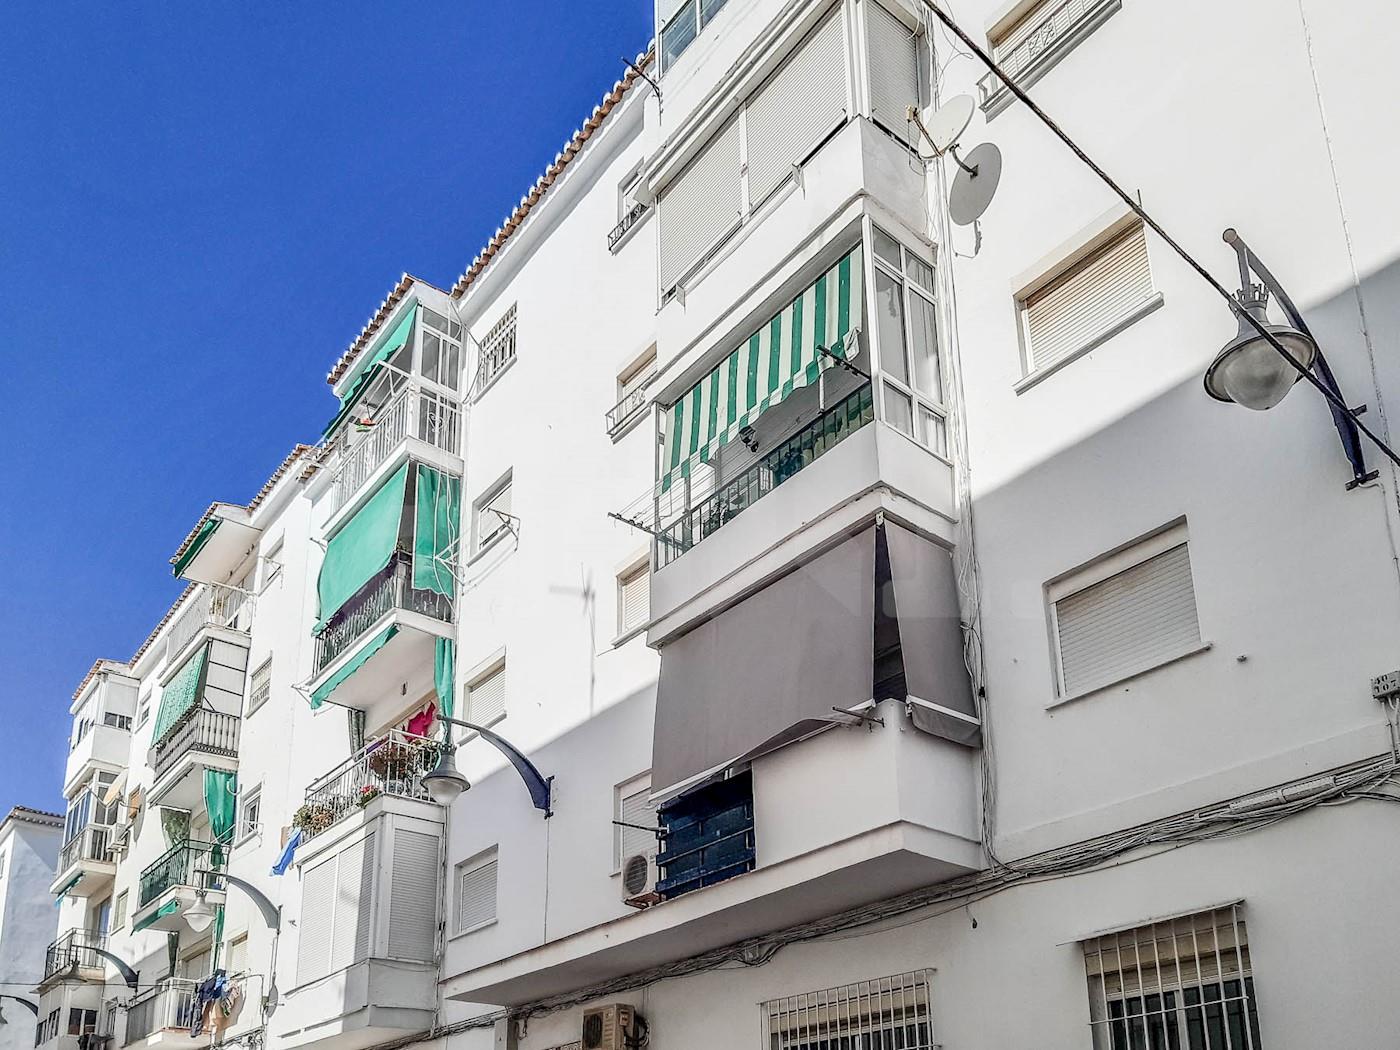 Calle Leonardo Talens Rivas, Ayuntamiento, Torremolinos, Málaga 1/30